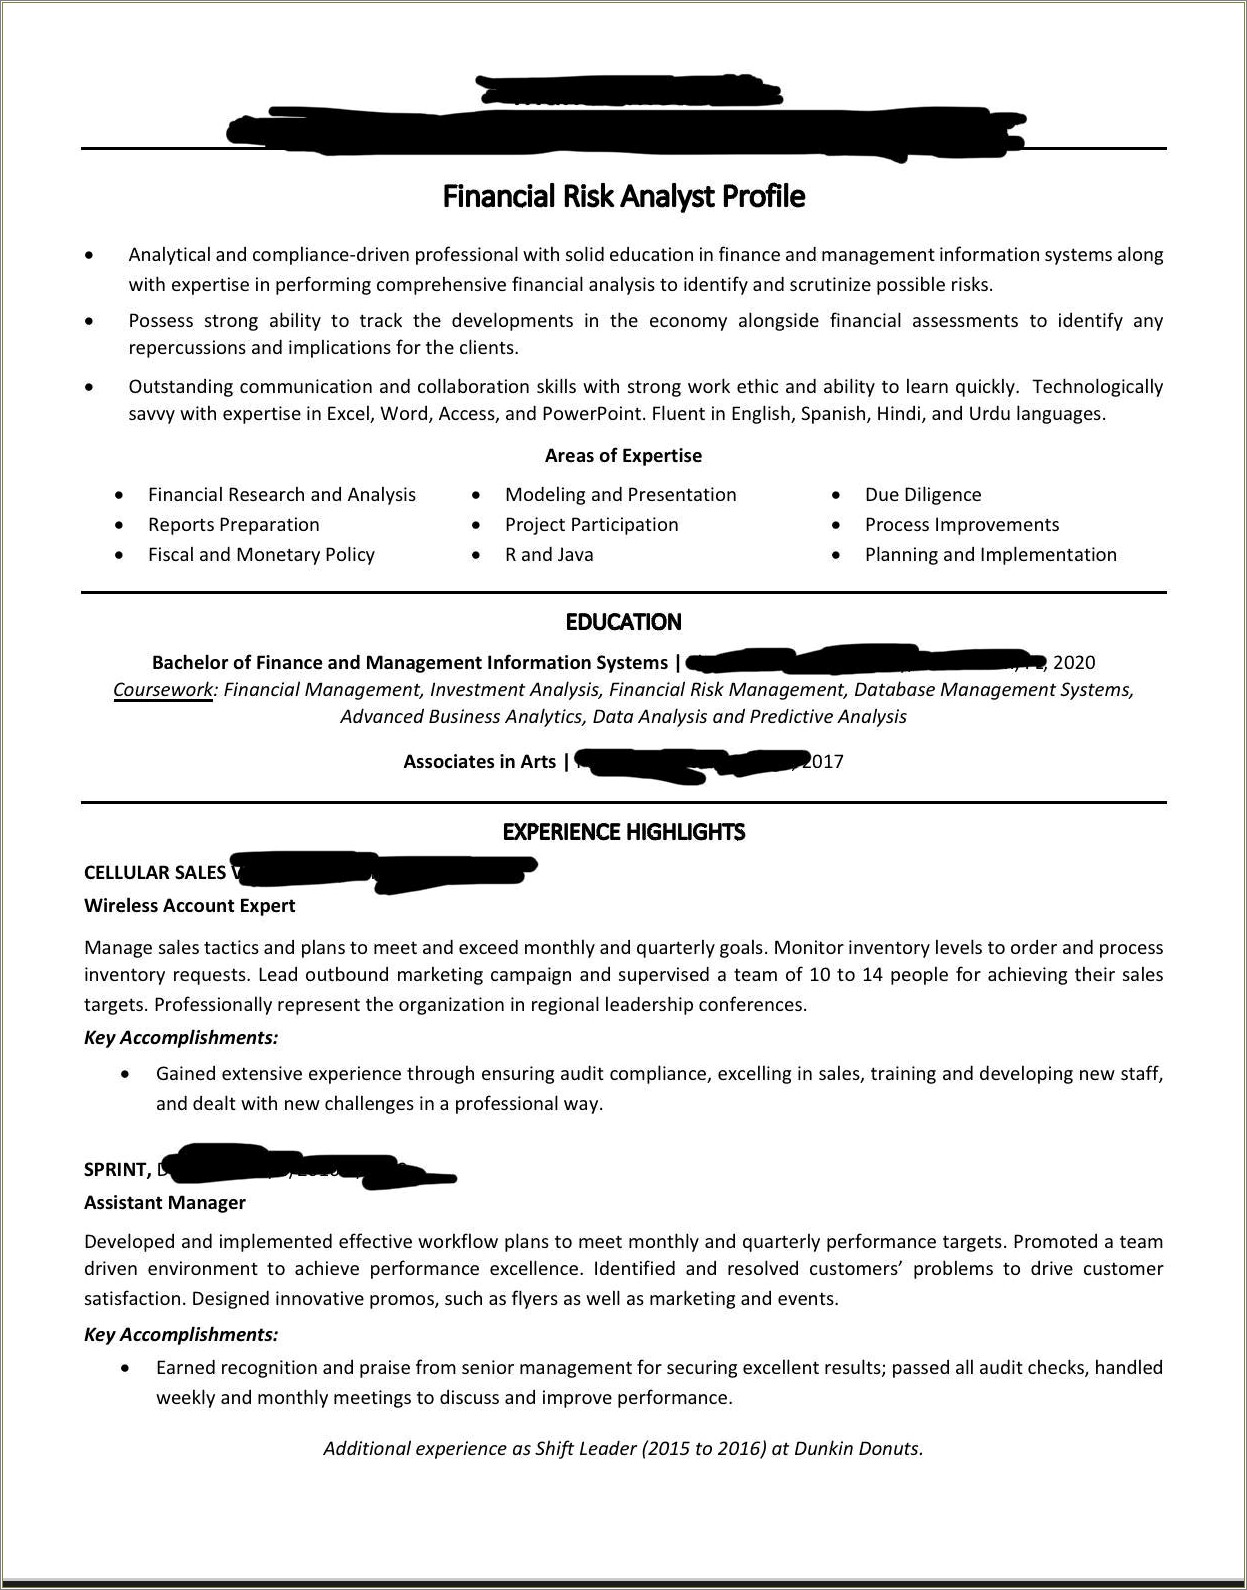 Dunkin Donuts Shift Leader Job Description For Resume